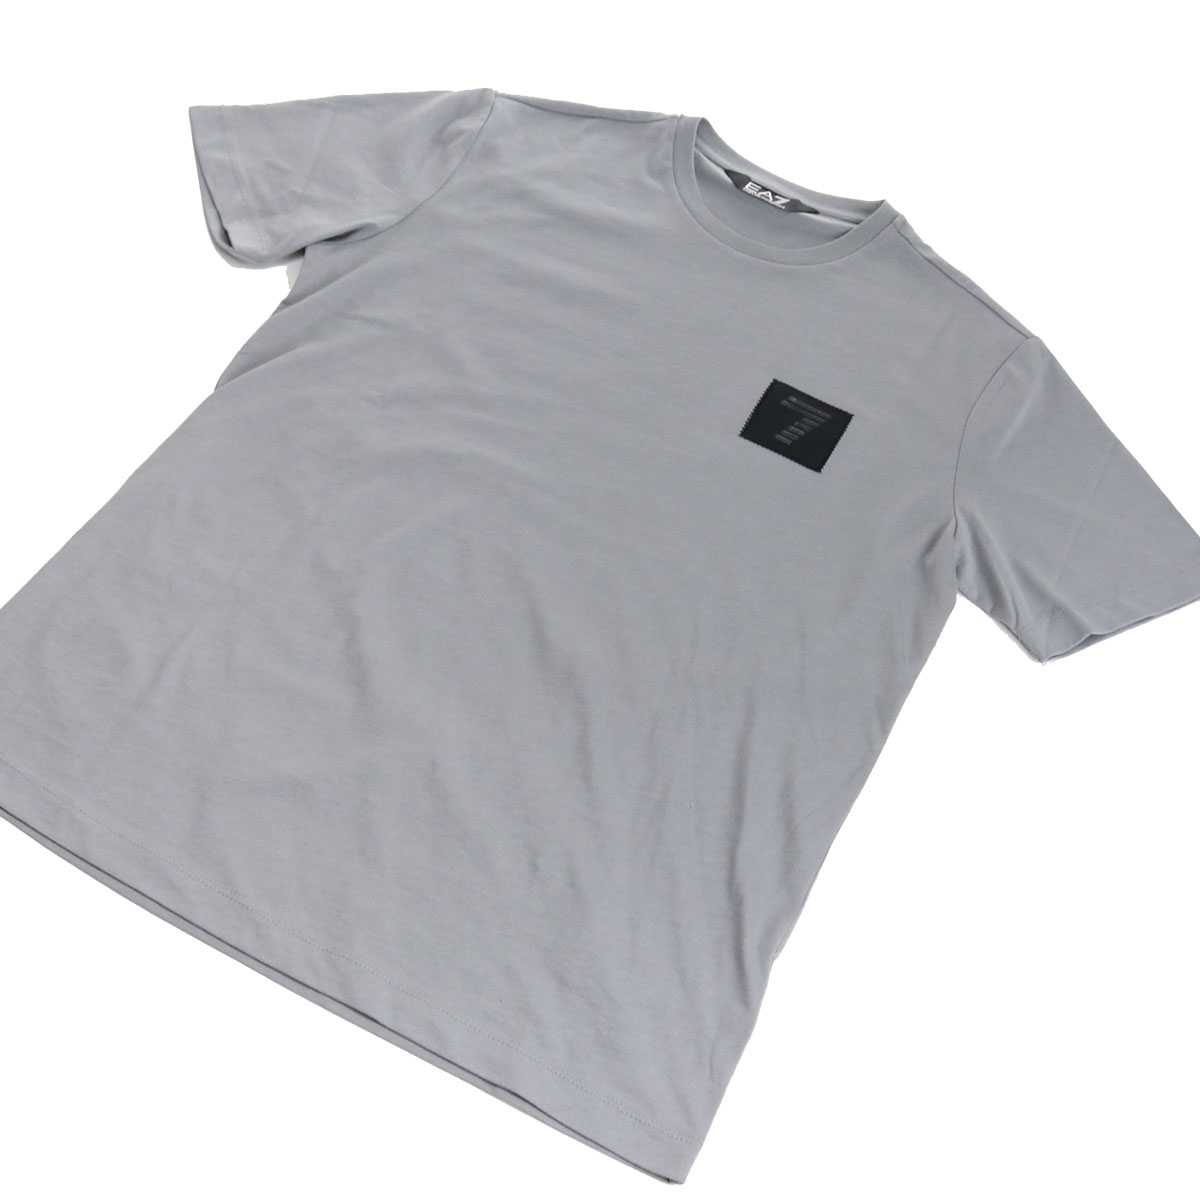 シルクシャツ+斬新的なTシャツ+マフラーの3点セットですその他